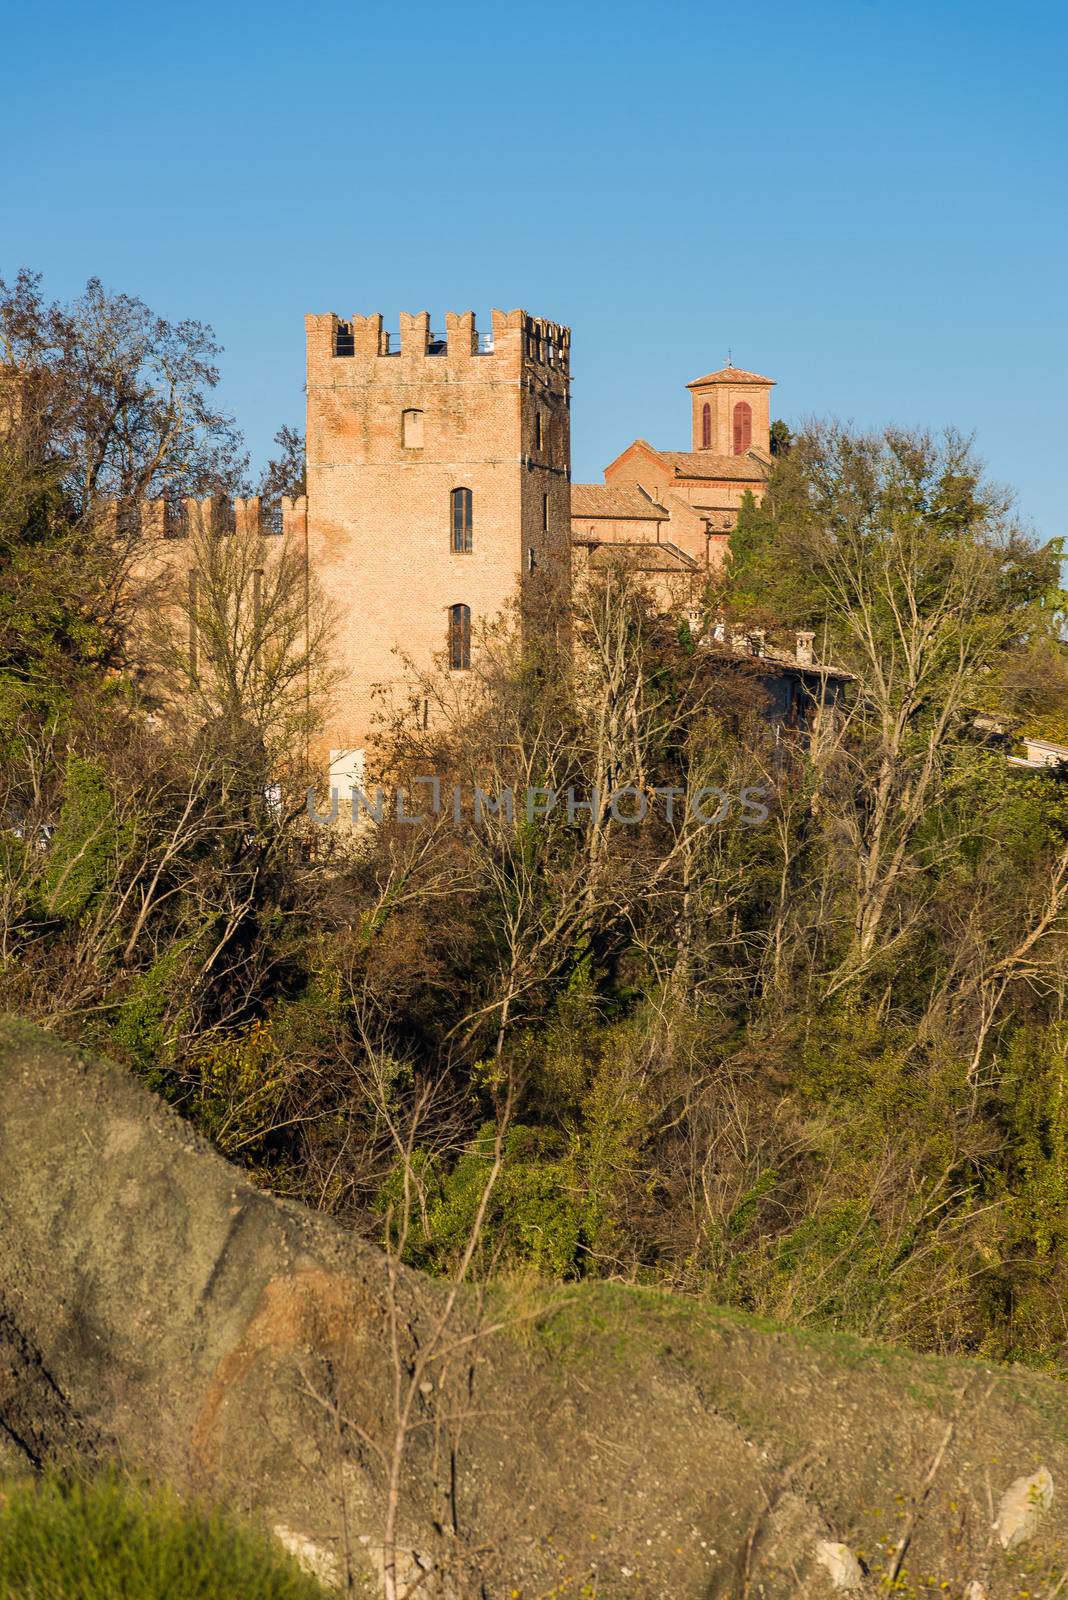 Tower of the Abbazia di Monteveglio by faabi